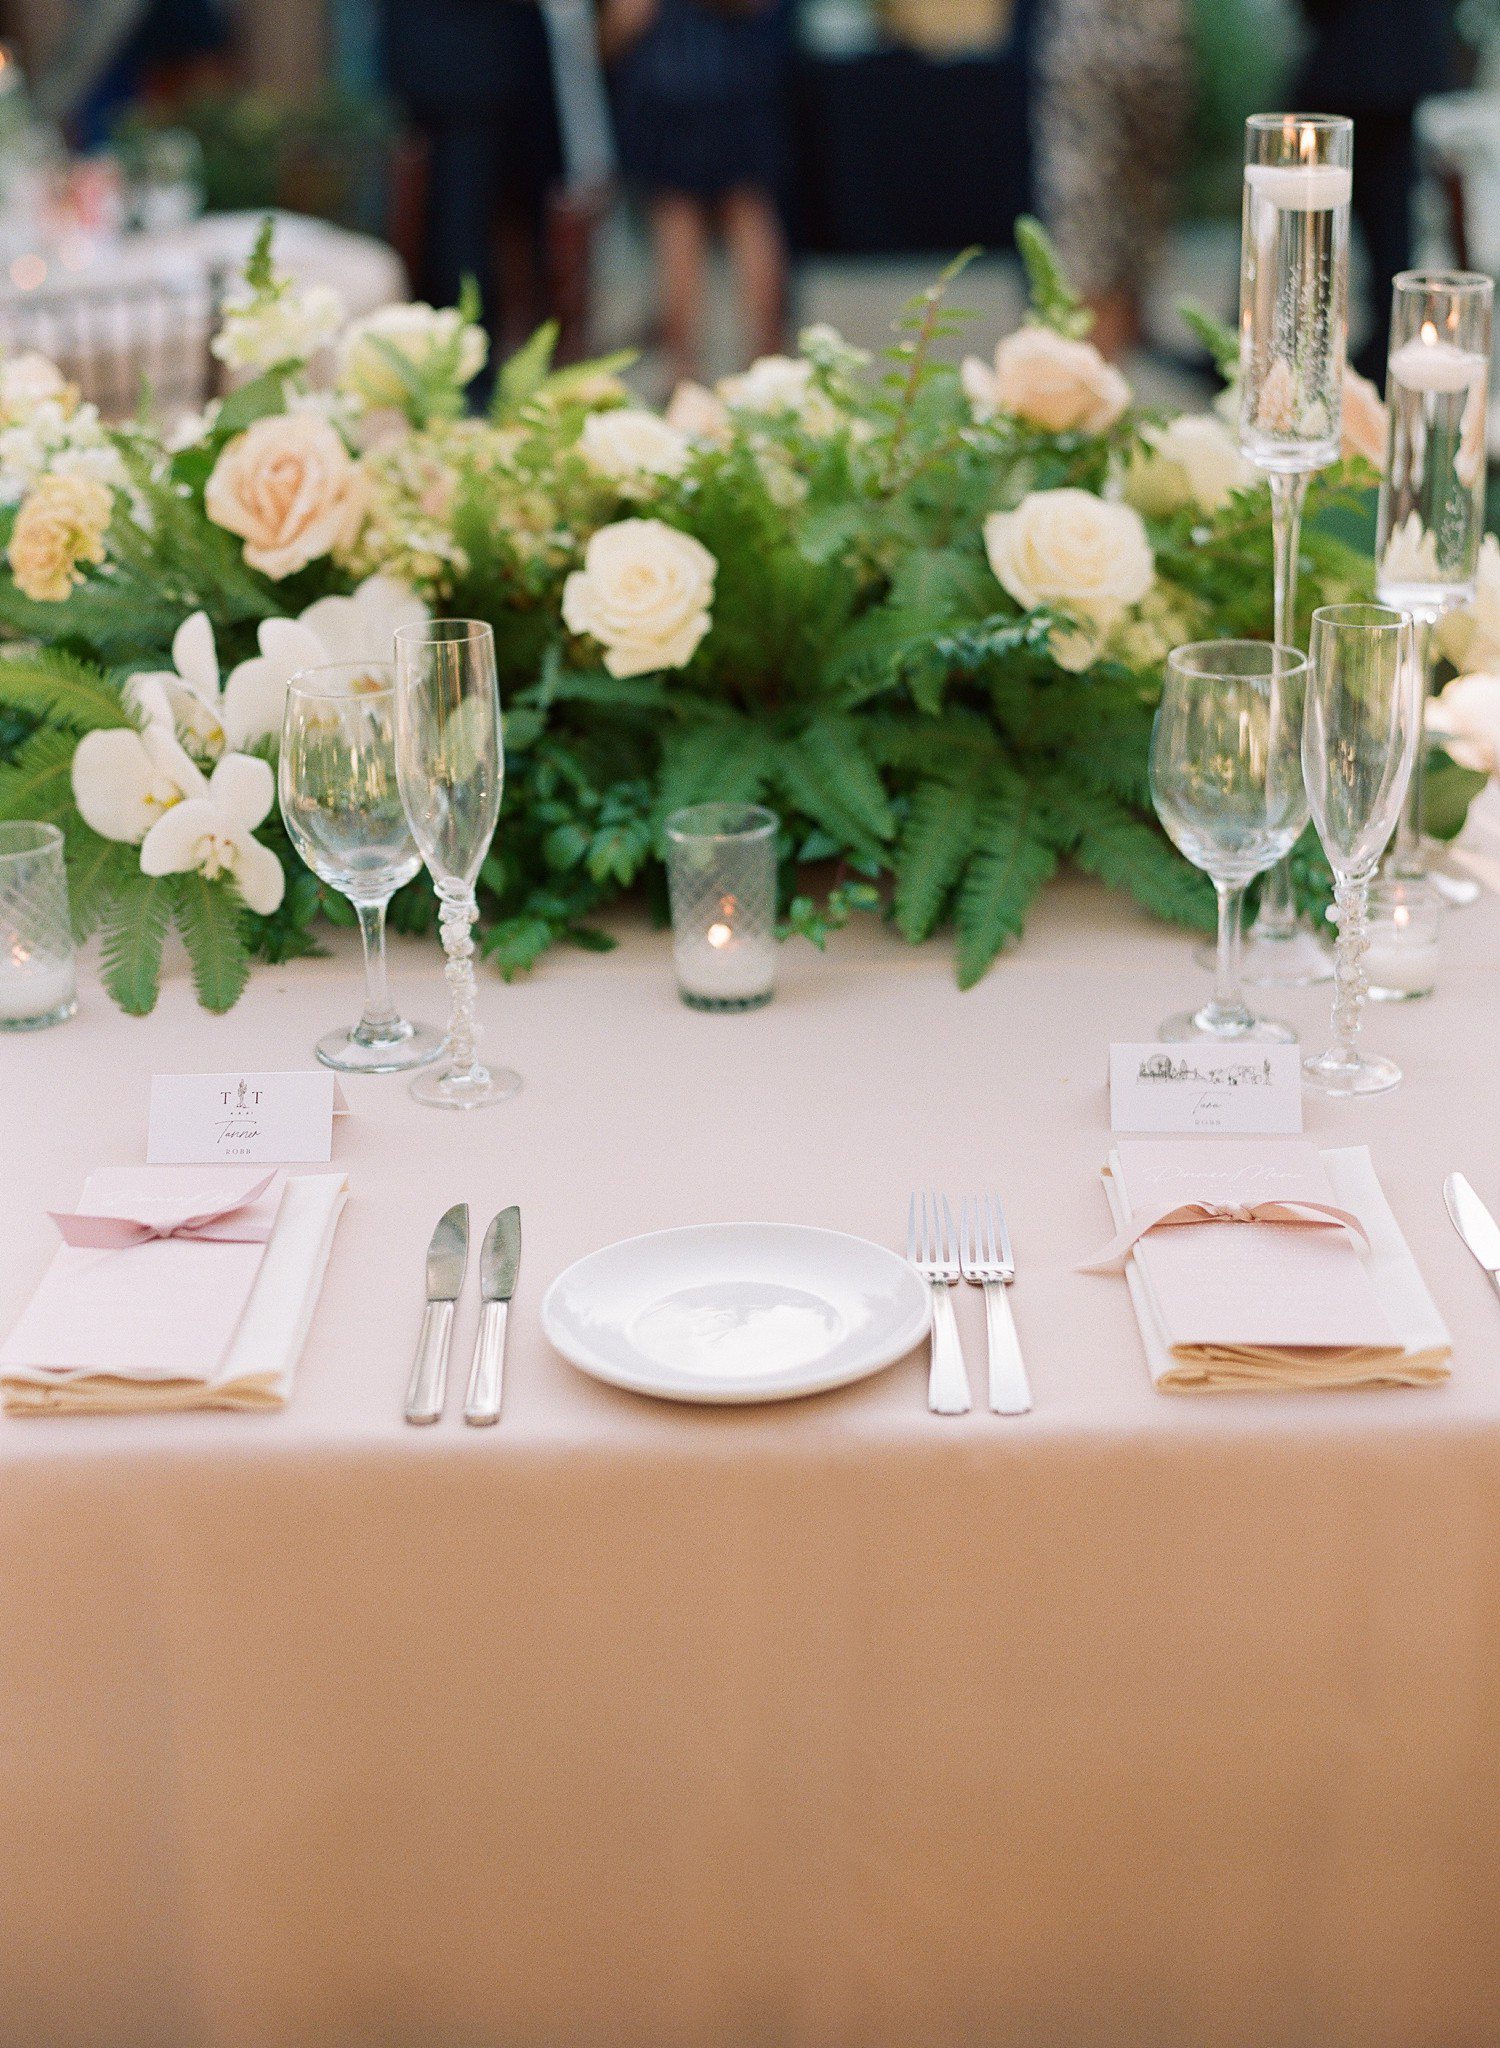 El Chorro Wedding Table Settings